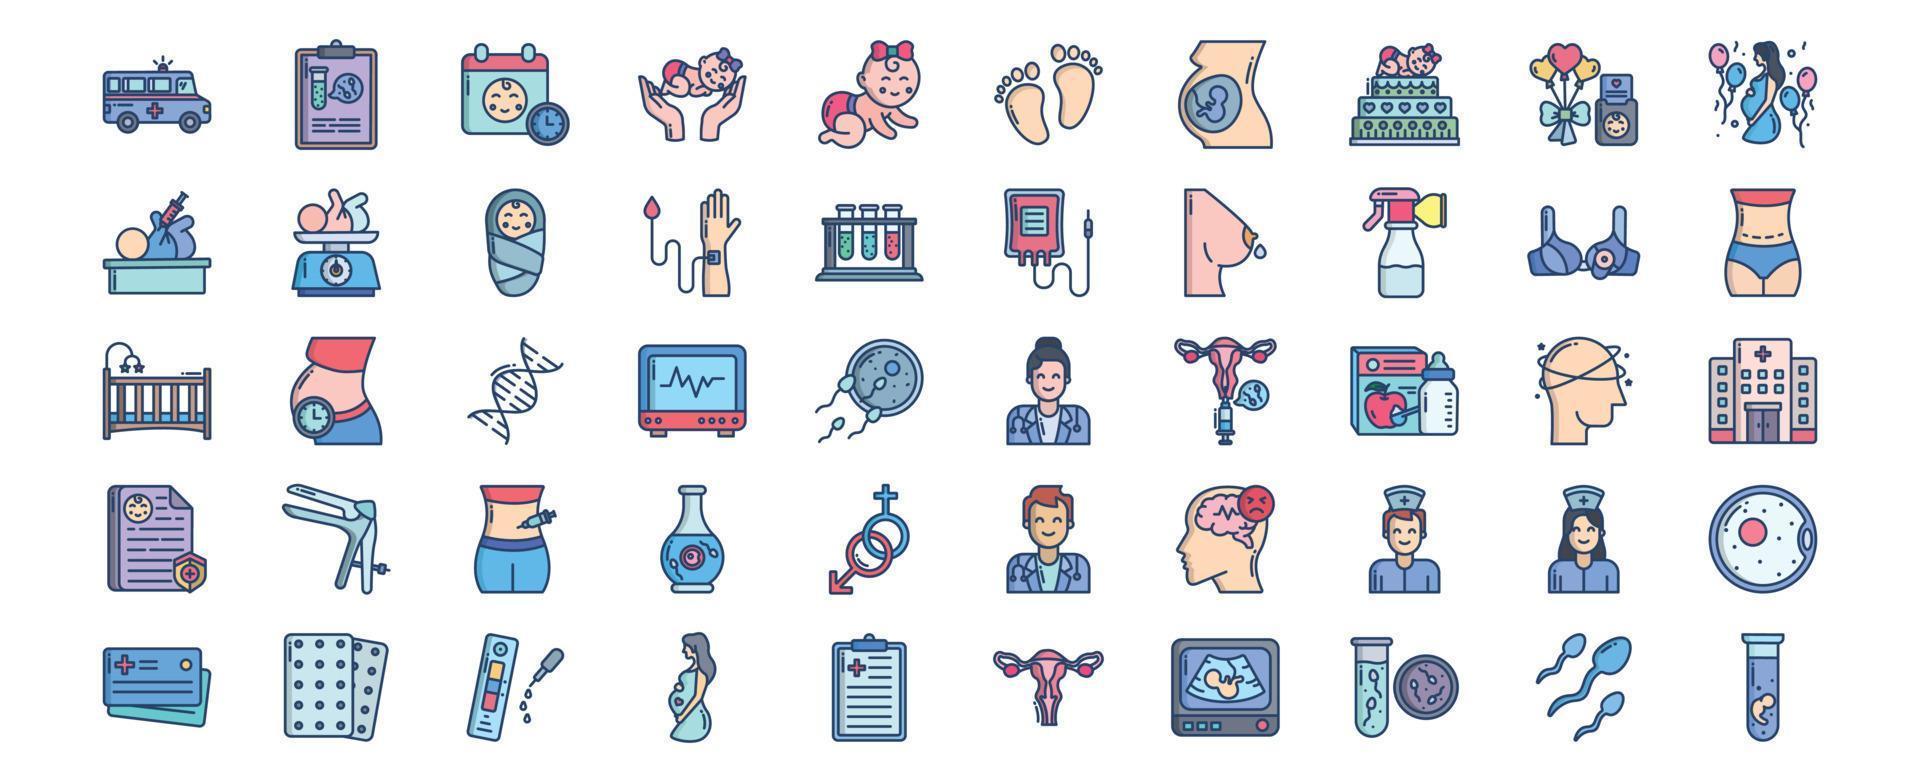 coleção de ícones relacionados à gravidez e maternidade, incluindo ícones como mãe, bebê, chá de bebê, médico e muito mais. ilustrações vetoriais, conjunto perfeito de pixels vetor